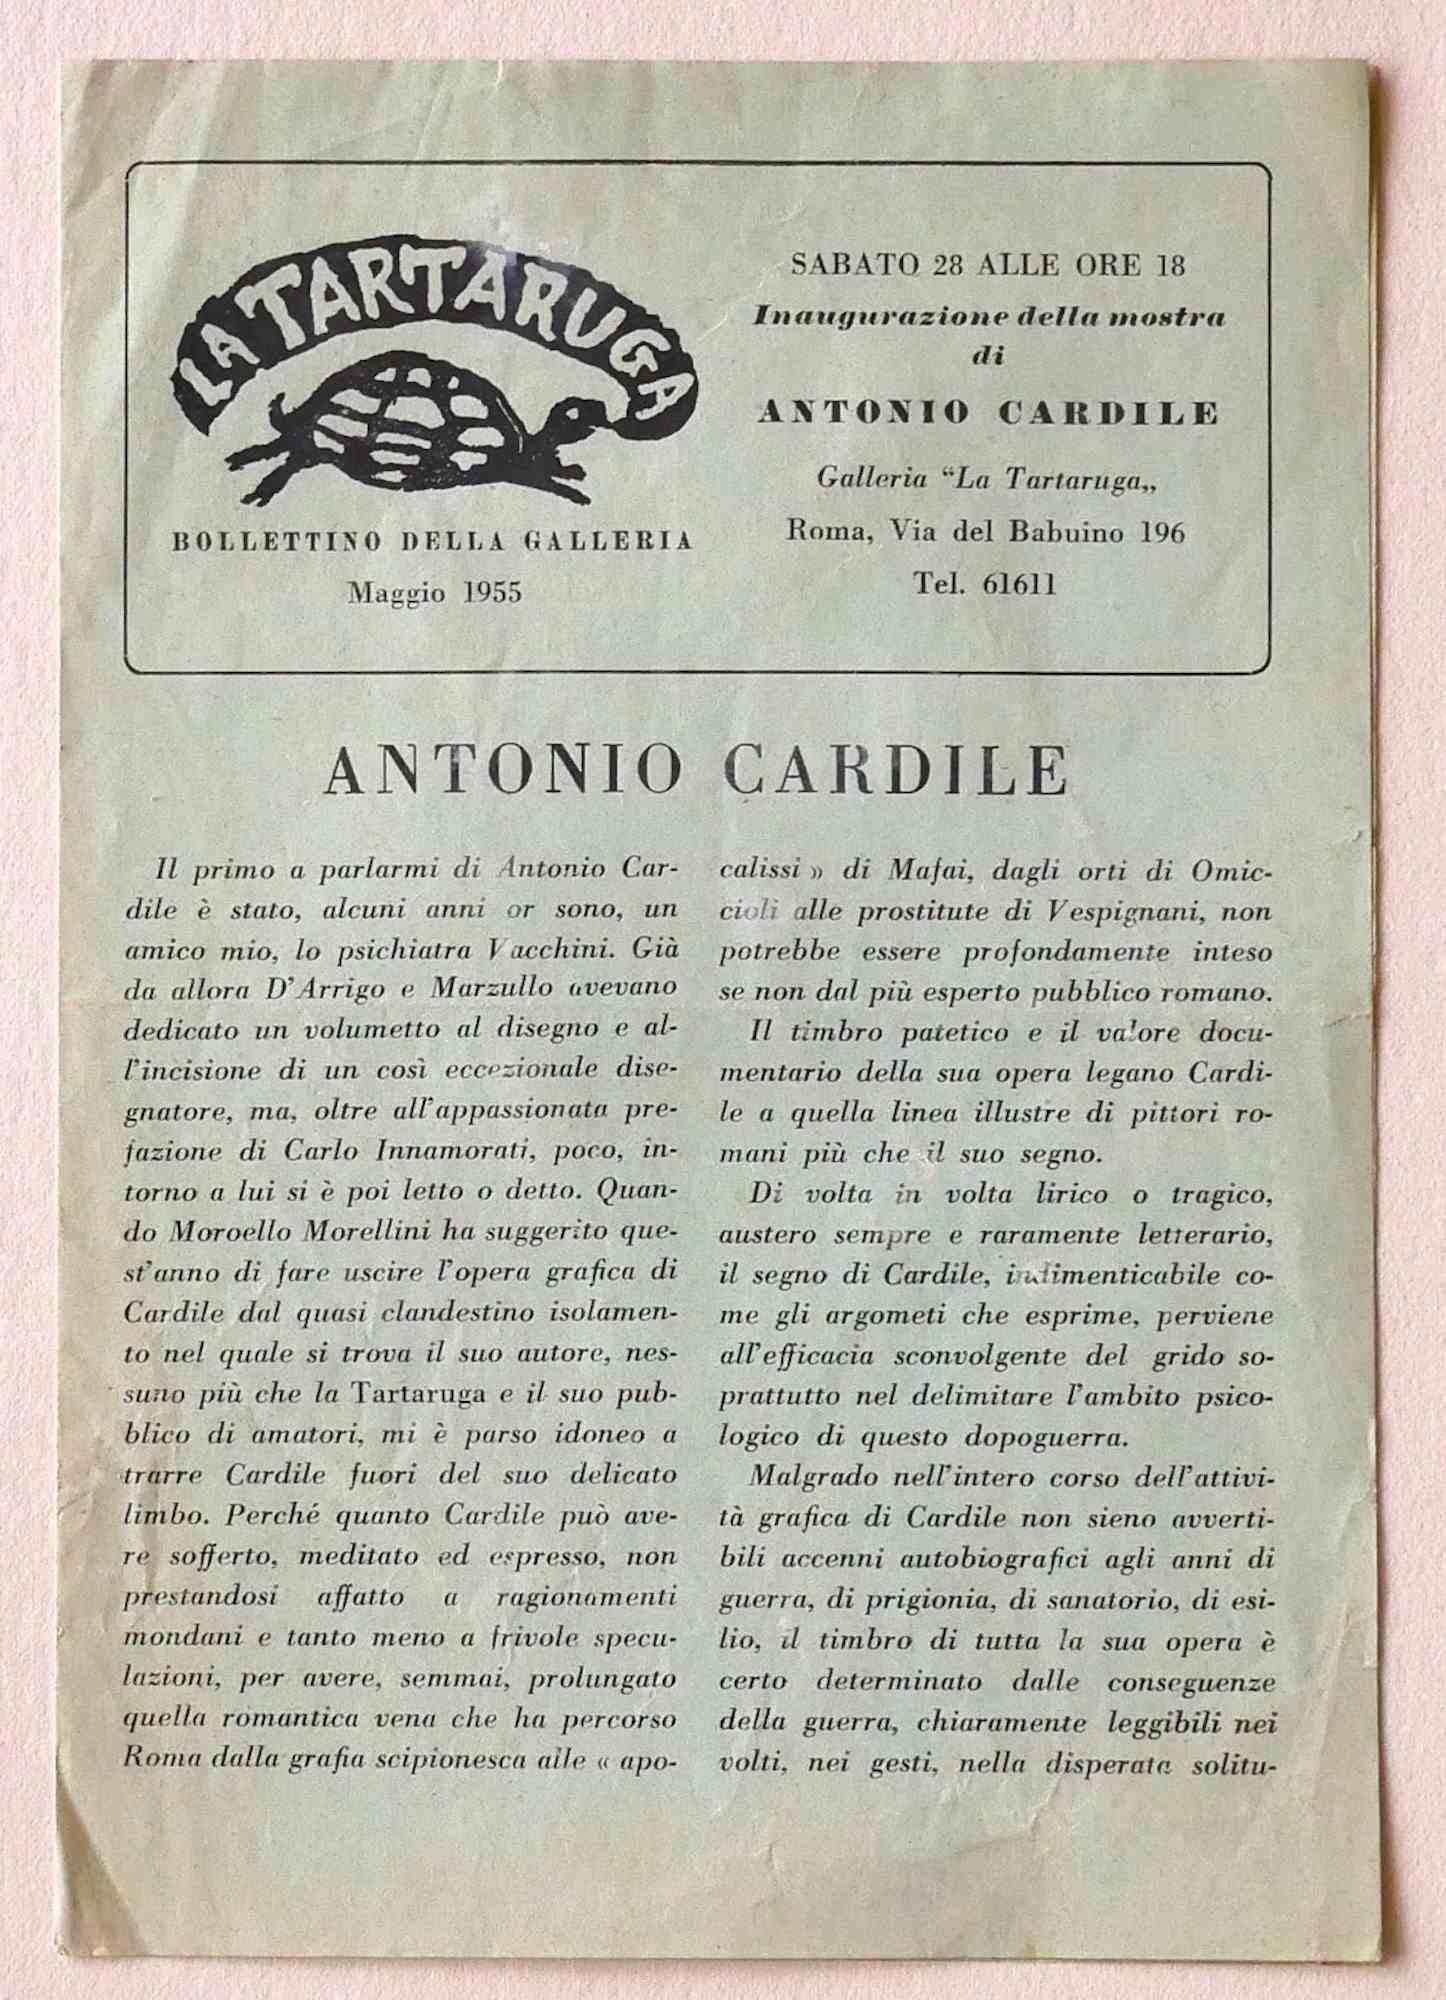 La Tartaruga Gallery Katalog - Vintage Katalog nach A. Cardile- 1955